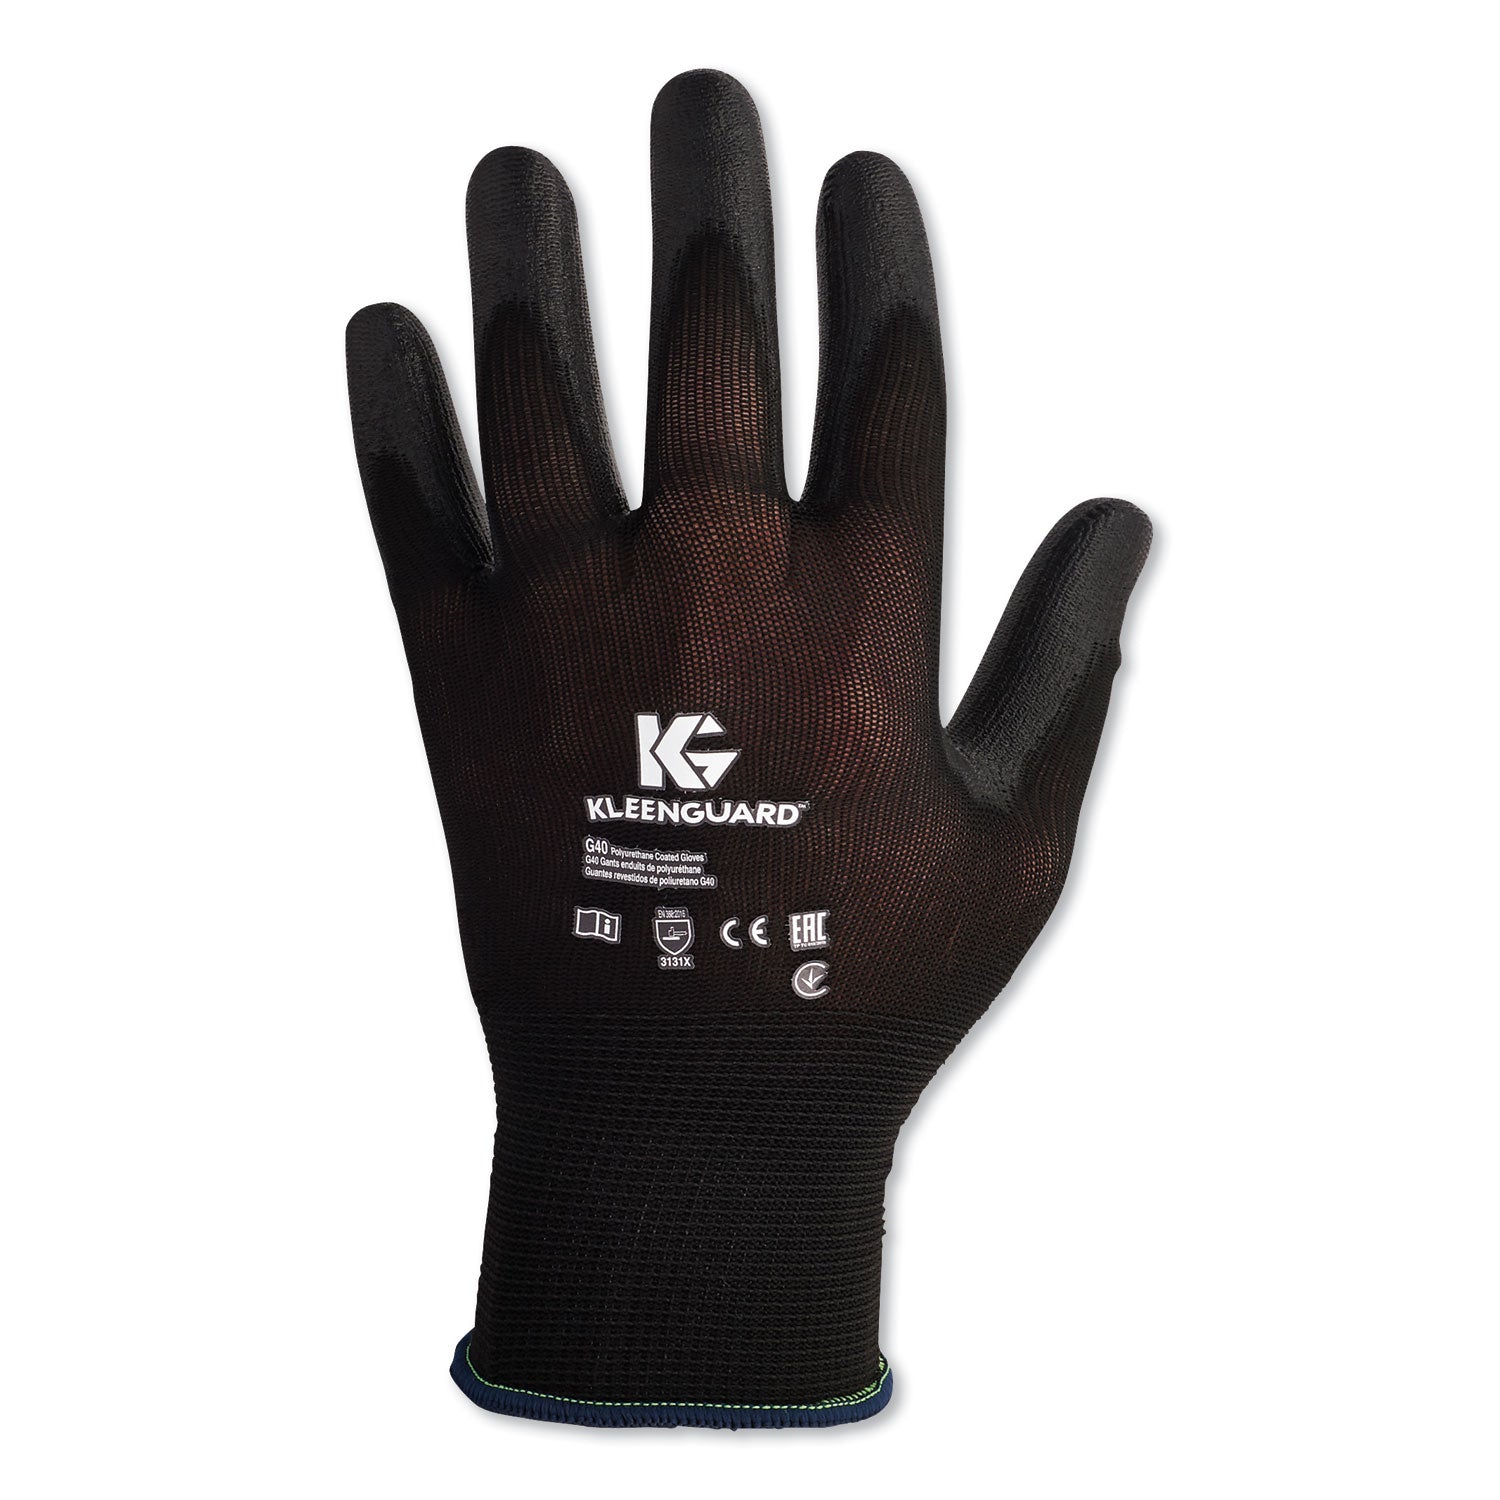 g40-polyurethane-coated-gloves-black-2x-large-60-carton_kcc13841 - 1